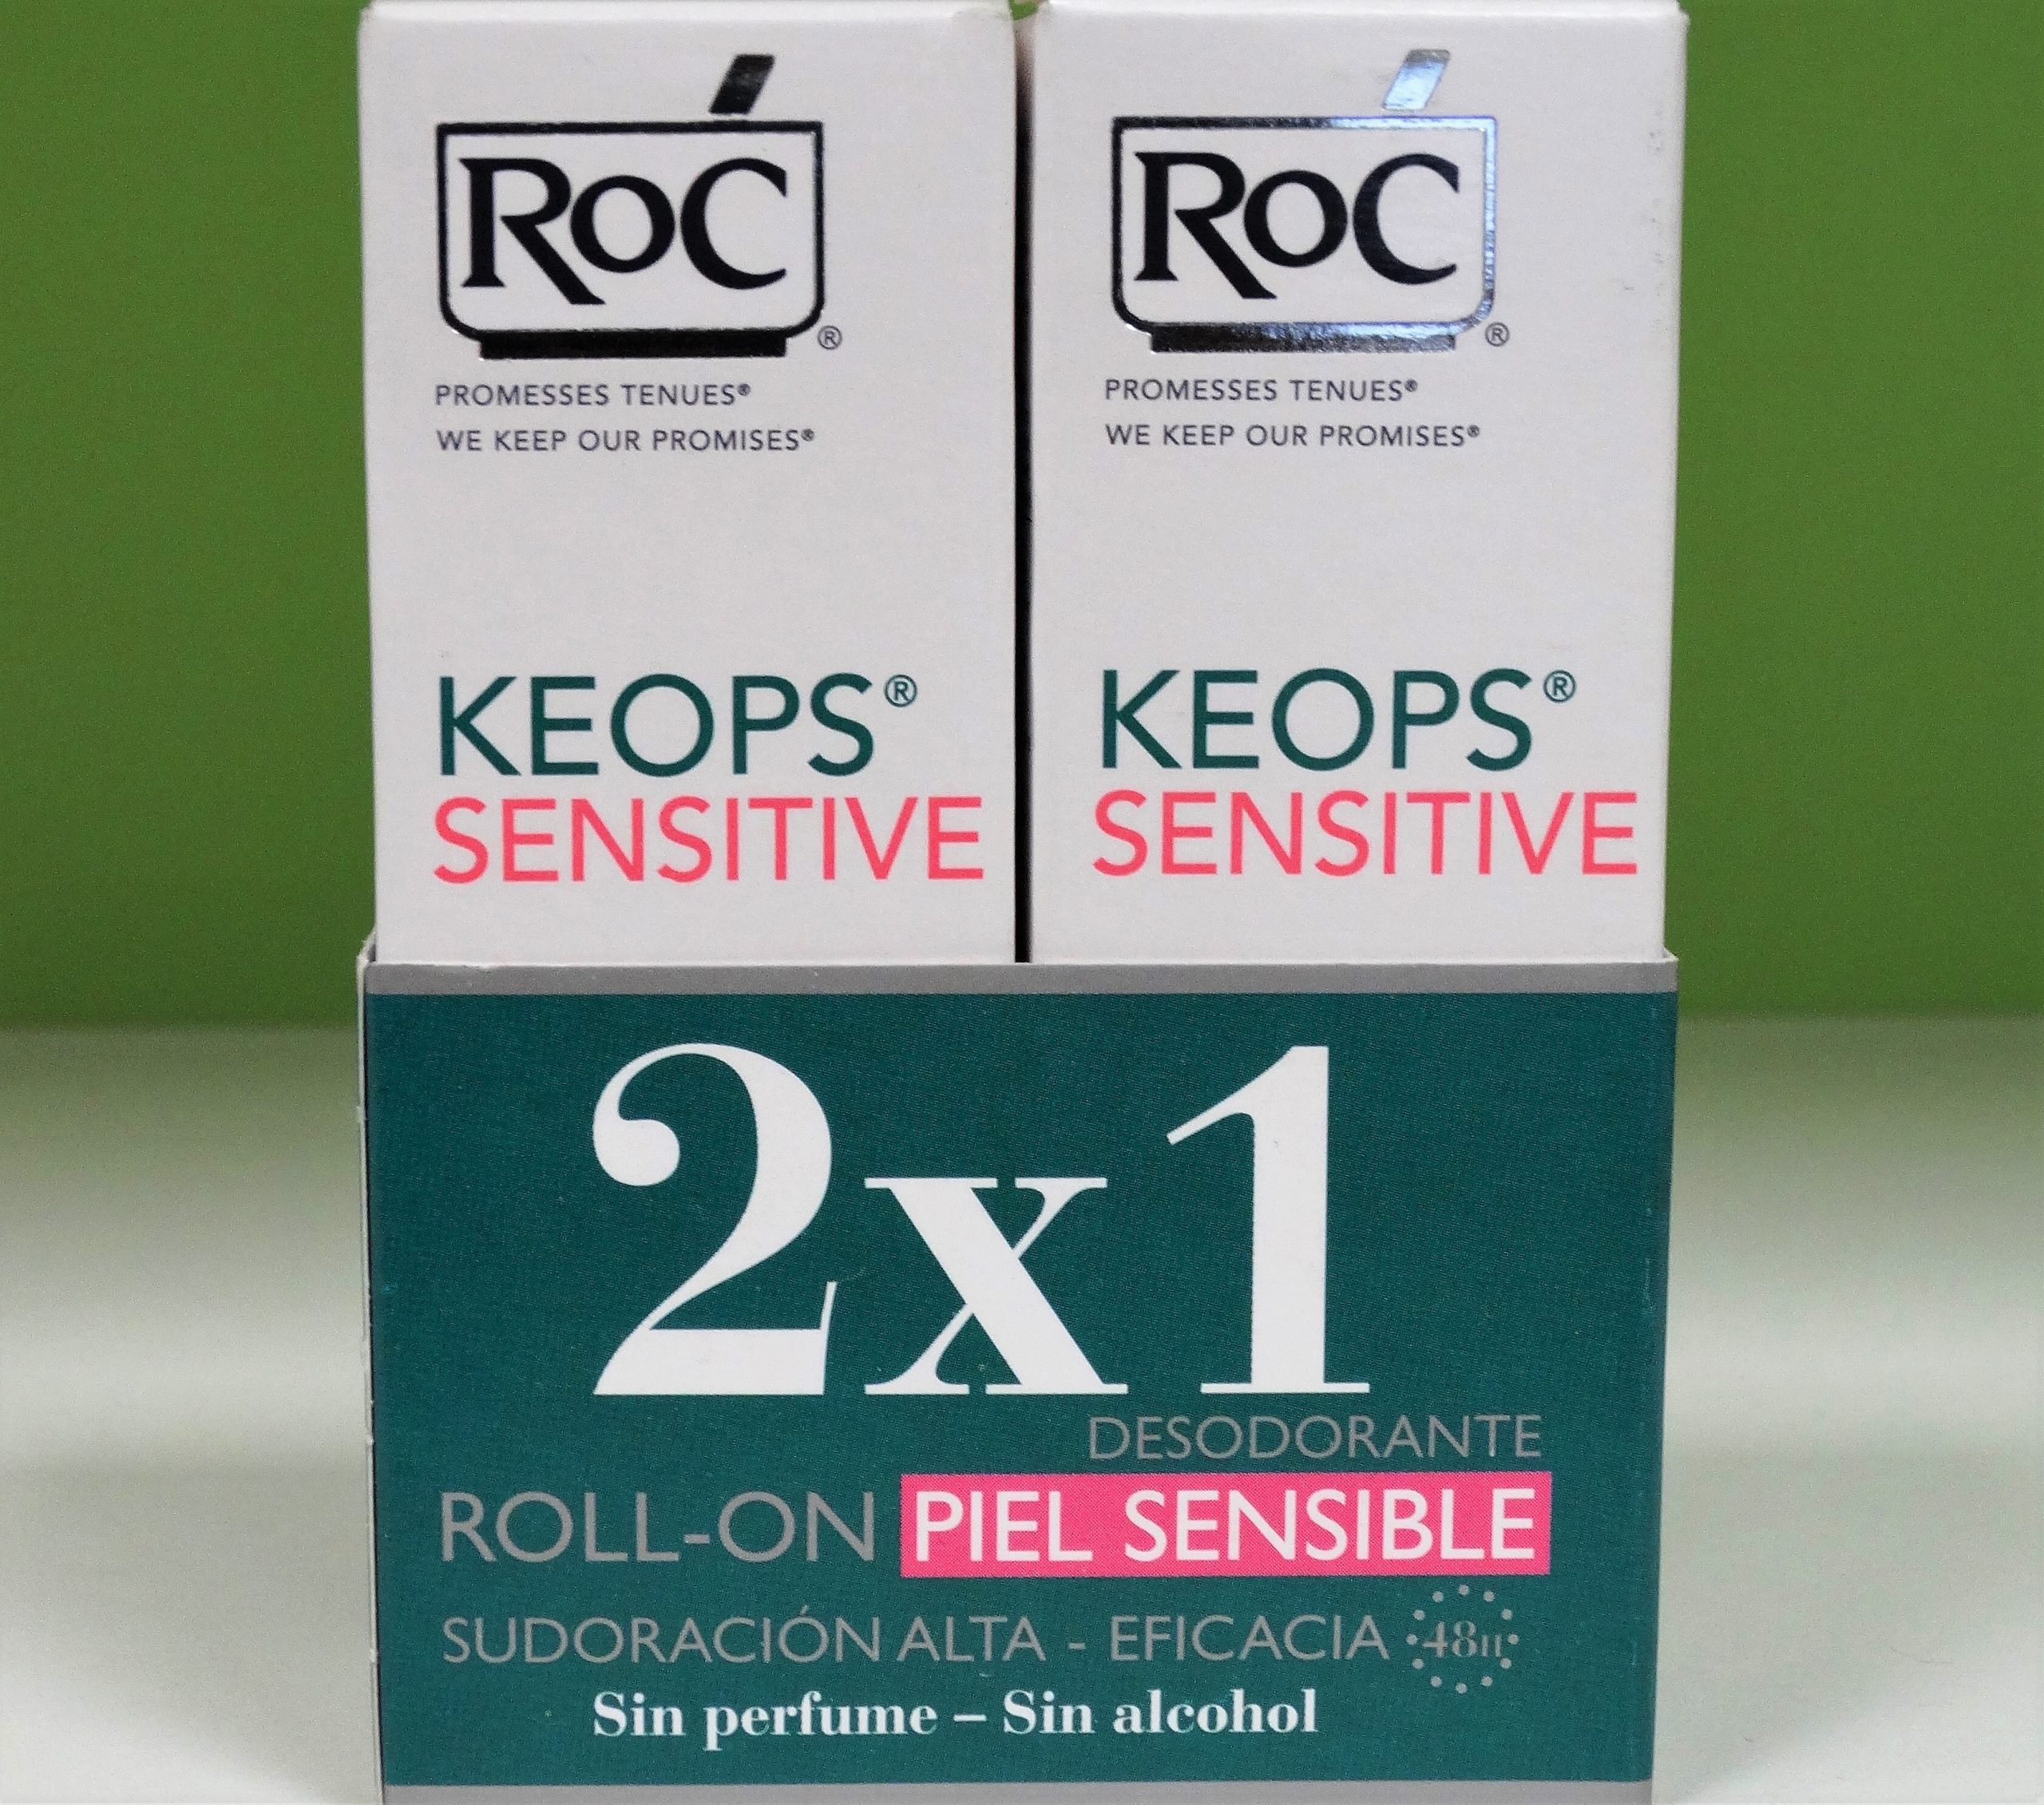 Roc Desodorante Keops Roll On Piel Sensible 30ml DUPLO 2X1 Desodorante Keops en stick es ideal para piel sensible y con sudoración moderada. Sin perfume, sin alcohol.